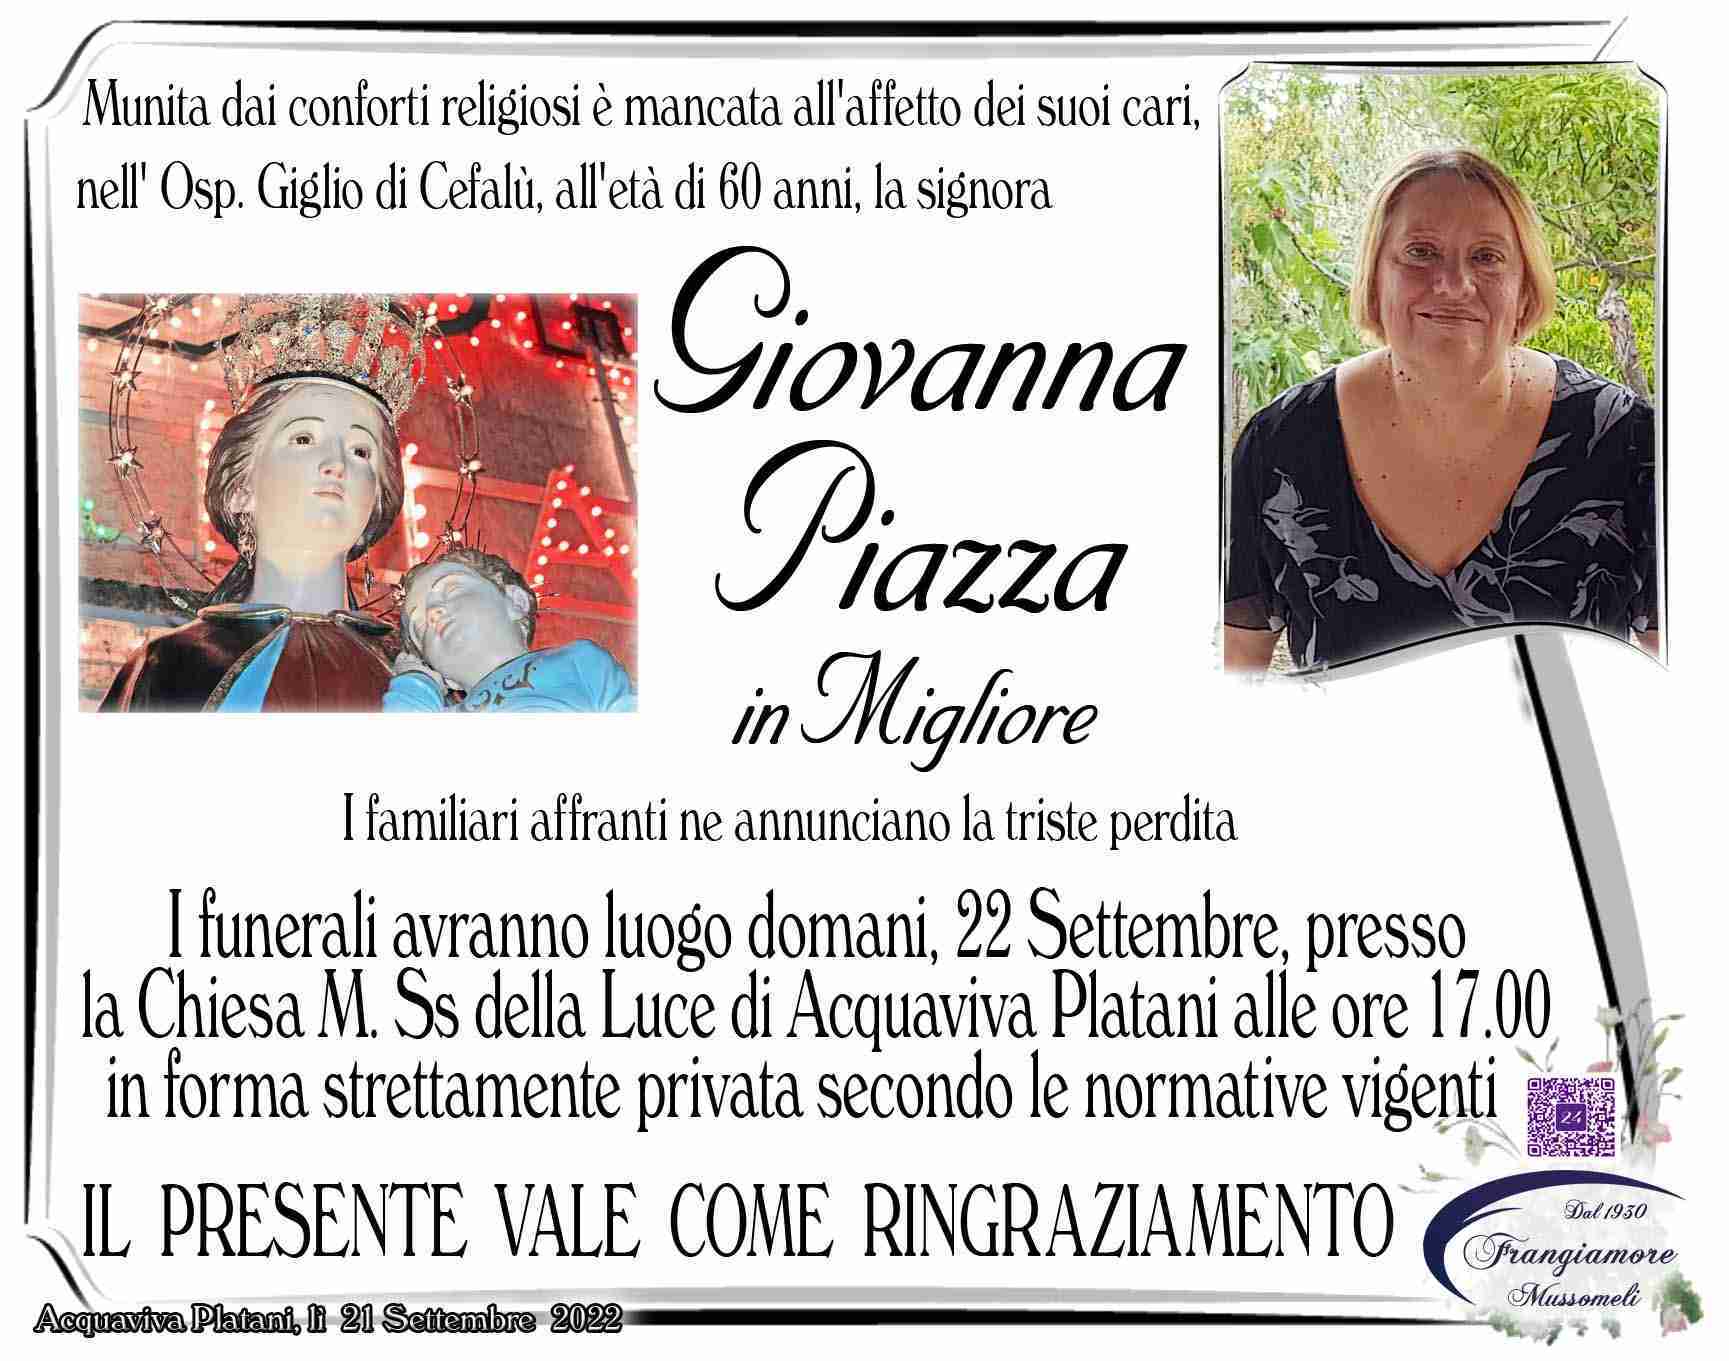 Giovanna Piazza